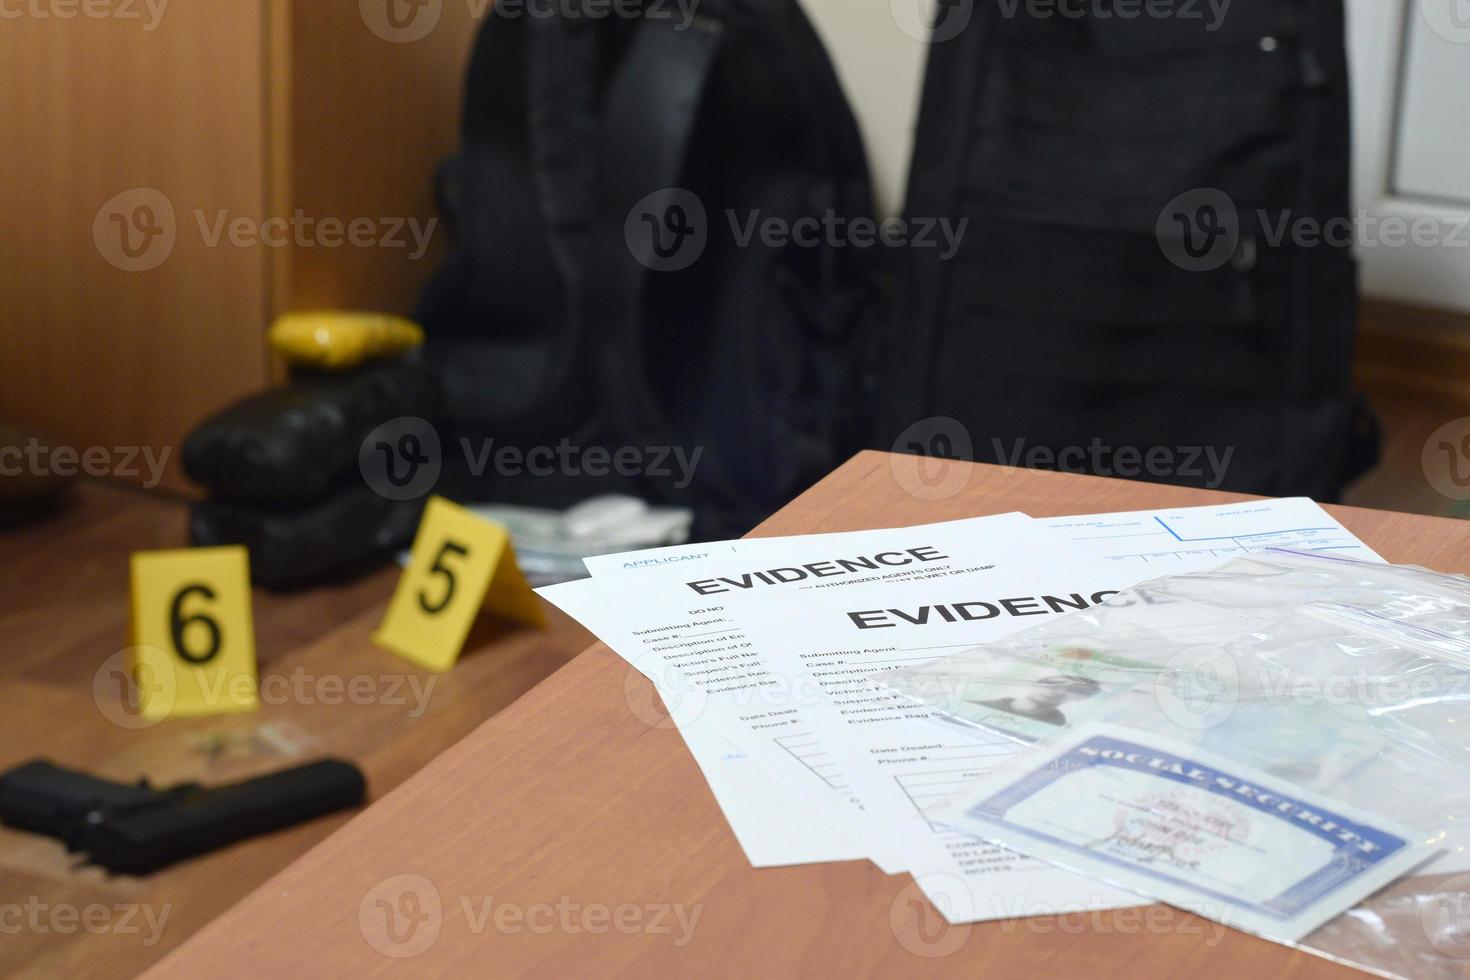 las etiquetas de evidencia y la tarjeta verde con el número ssn se encuentran en la mesa con una gran cantidad de elementos como evidencia en el proceso de investigación de la escena del crimen en el fondo foto